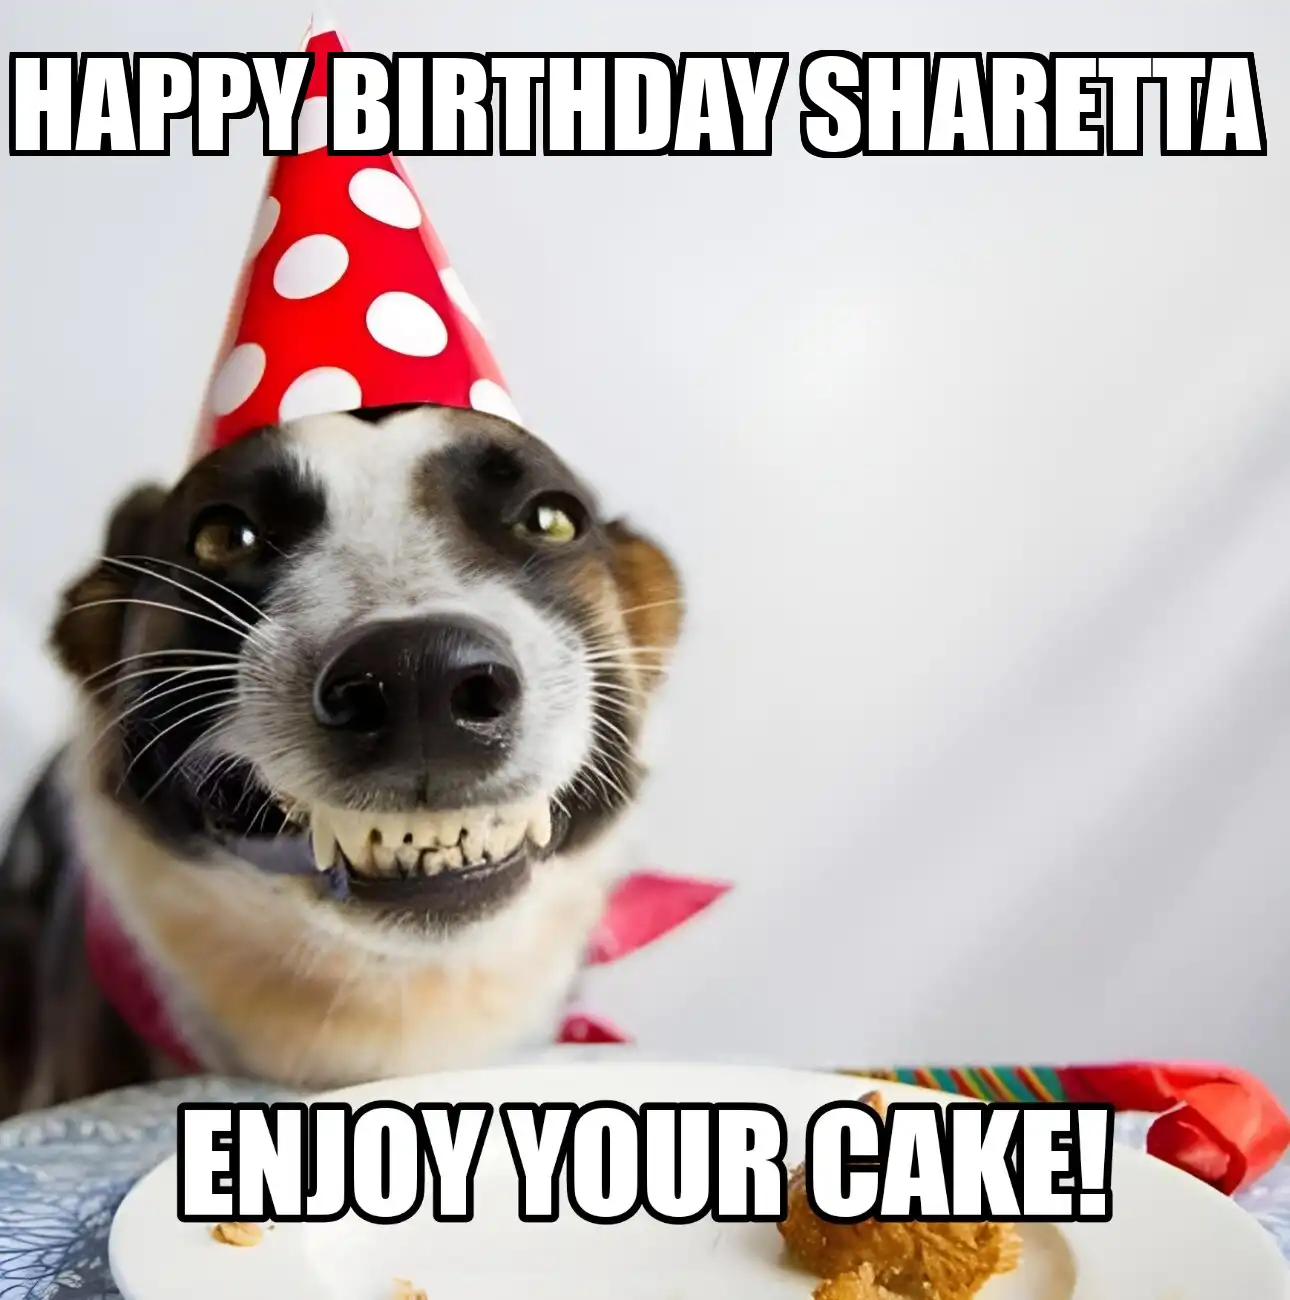 Happy Birthday Sharetta Enjoy Your Cake Dog Meme